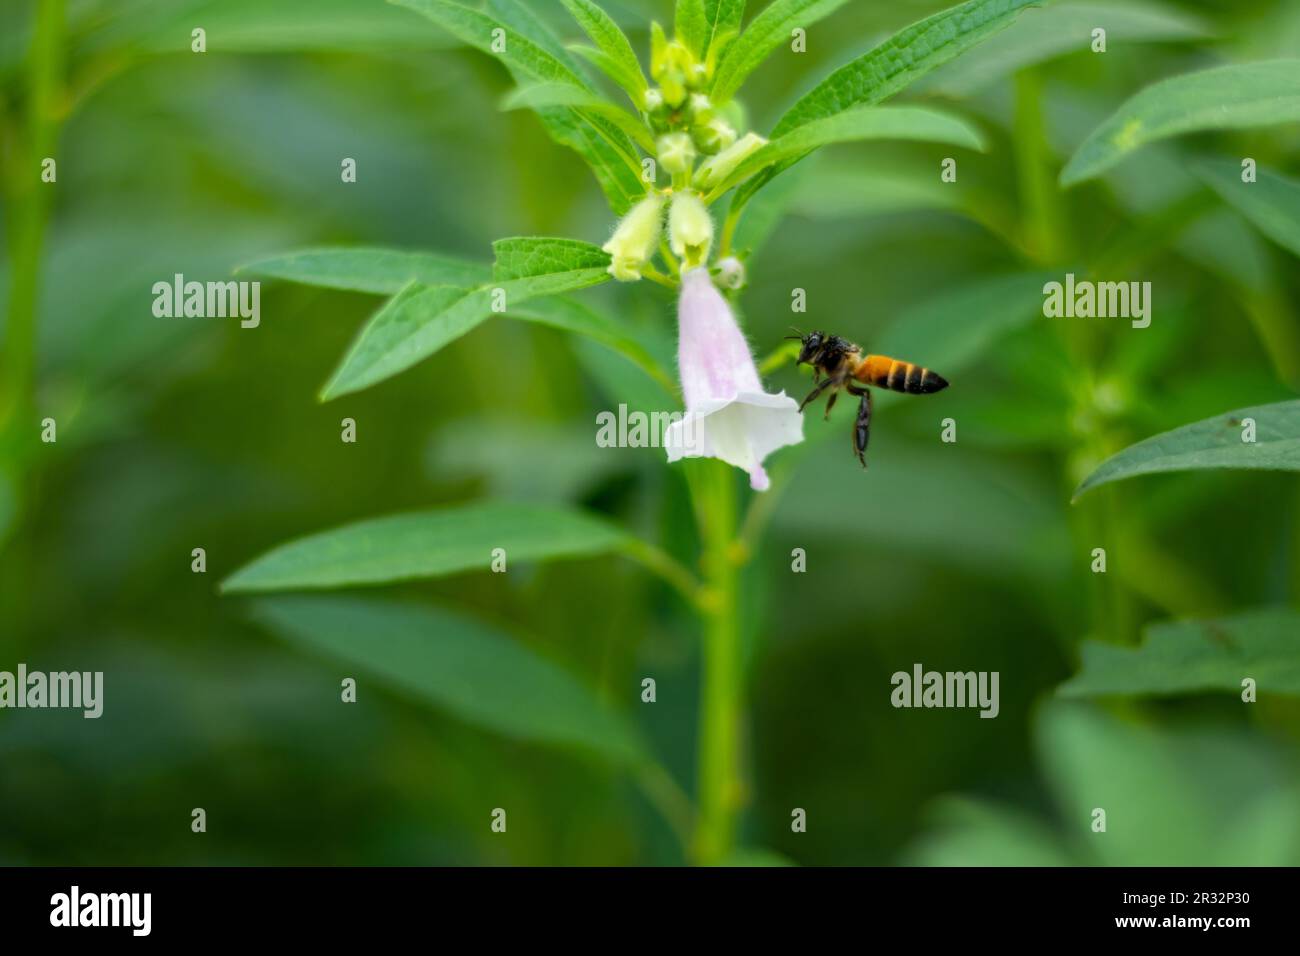 Api ed insetti altri stanno raccogliendo miele dal fiore. Pianta verde di sesamo con gambo alto, foglie lunghe e strette e fiore bianco a forma di campana Foto Stock